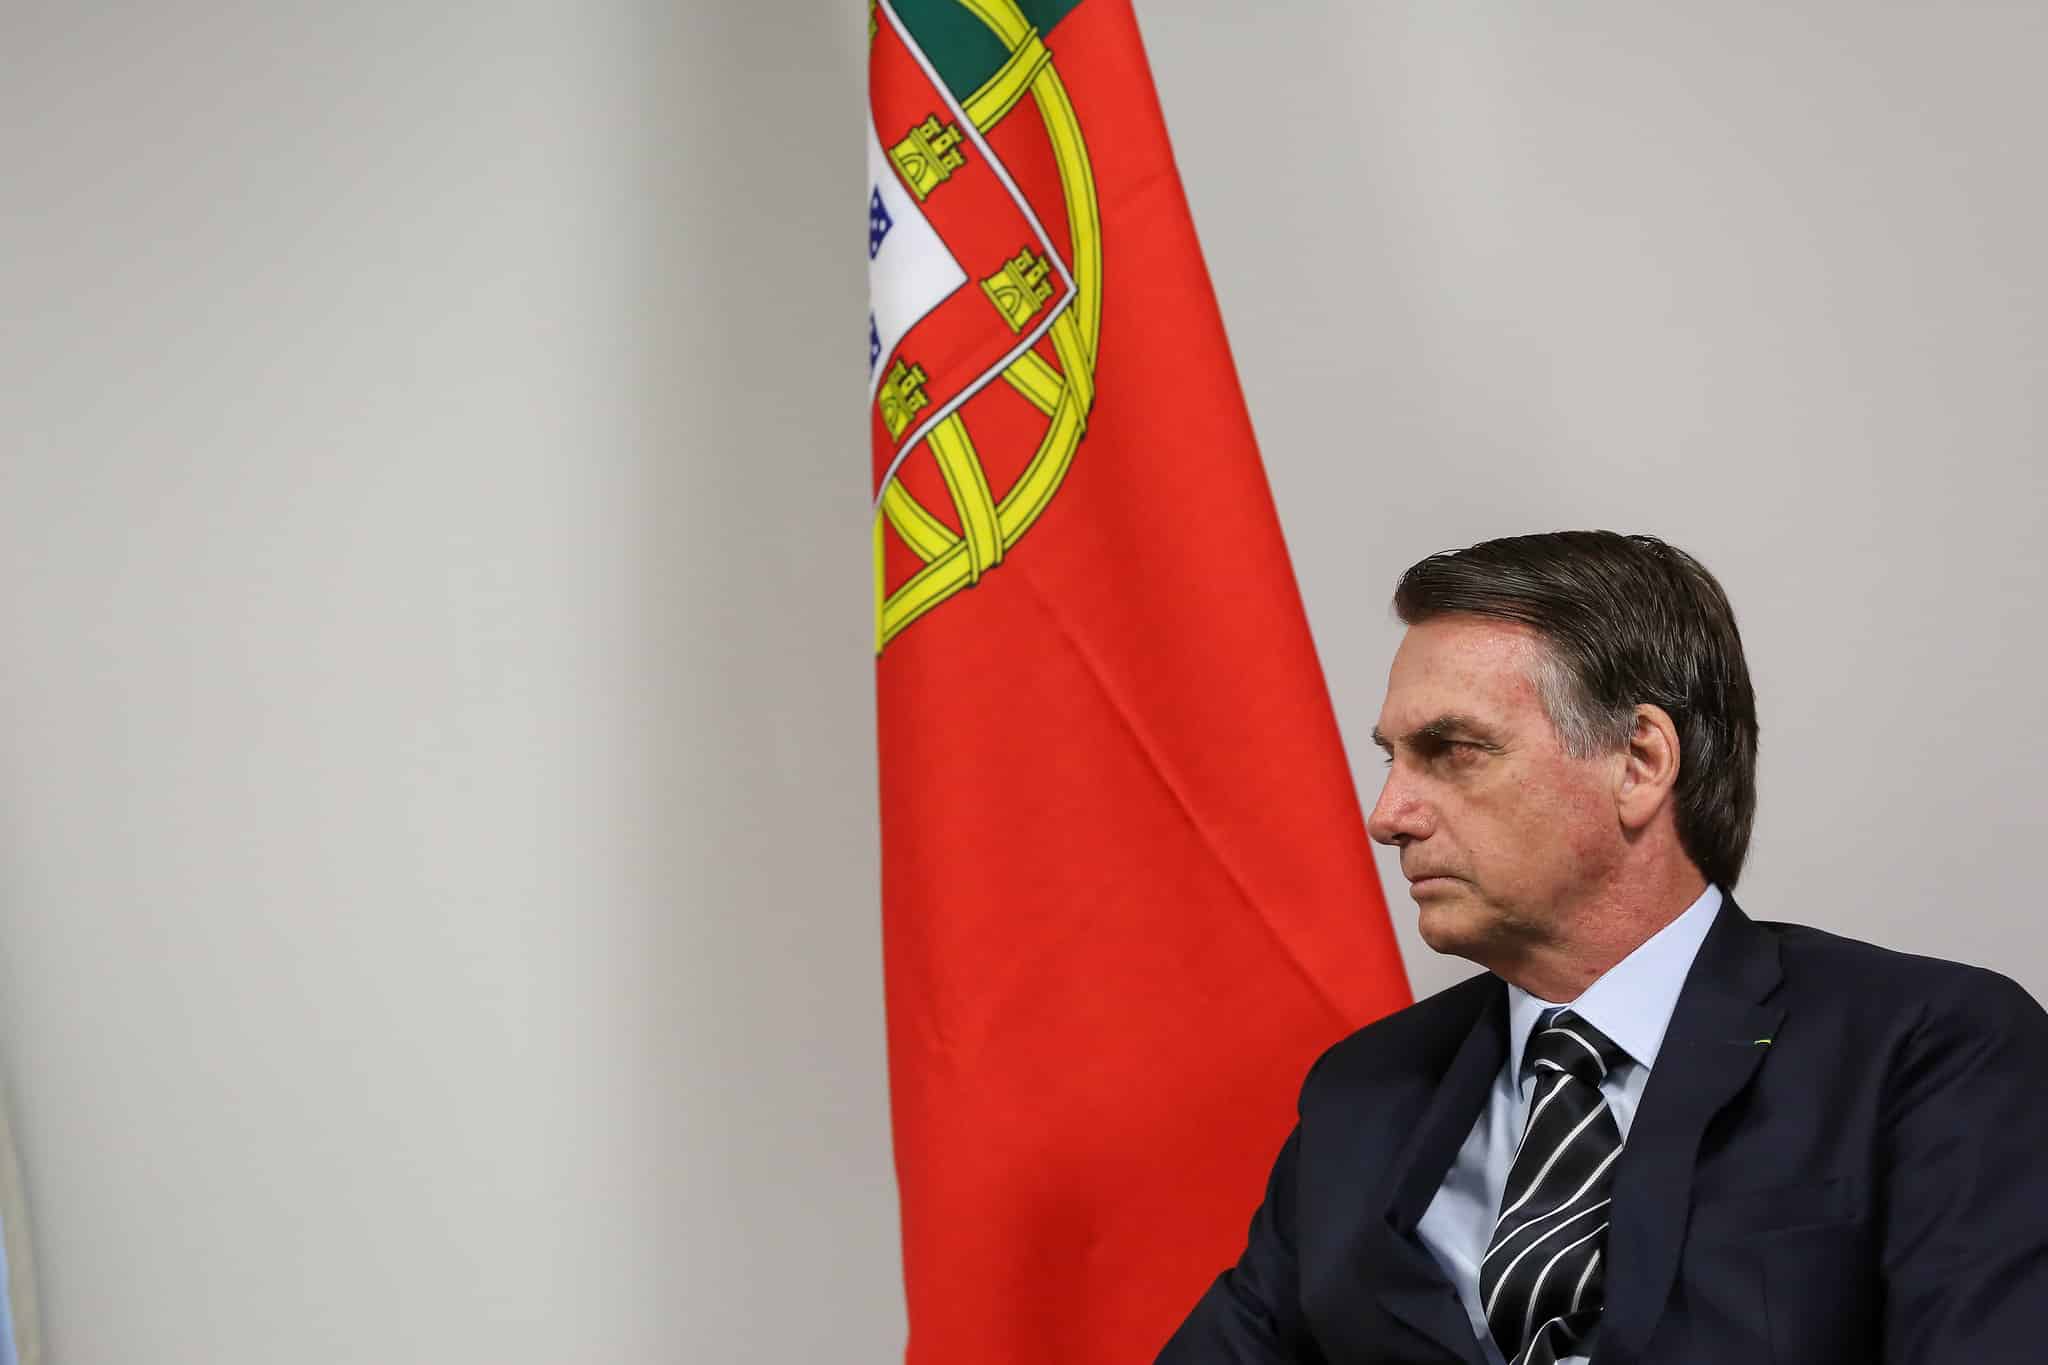 Bolsonaro manda recado para cidadãos portugueses: "Lutem por Deus, pátria, família e liberdade”